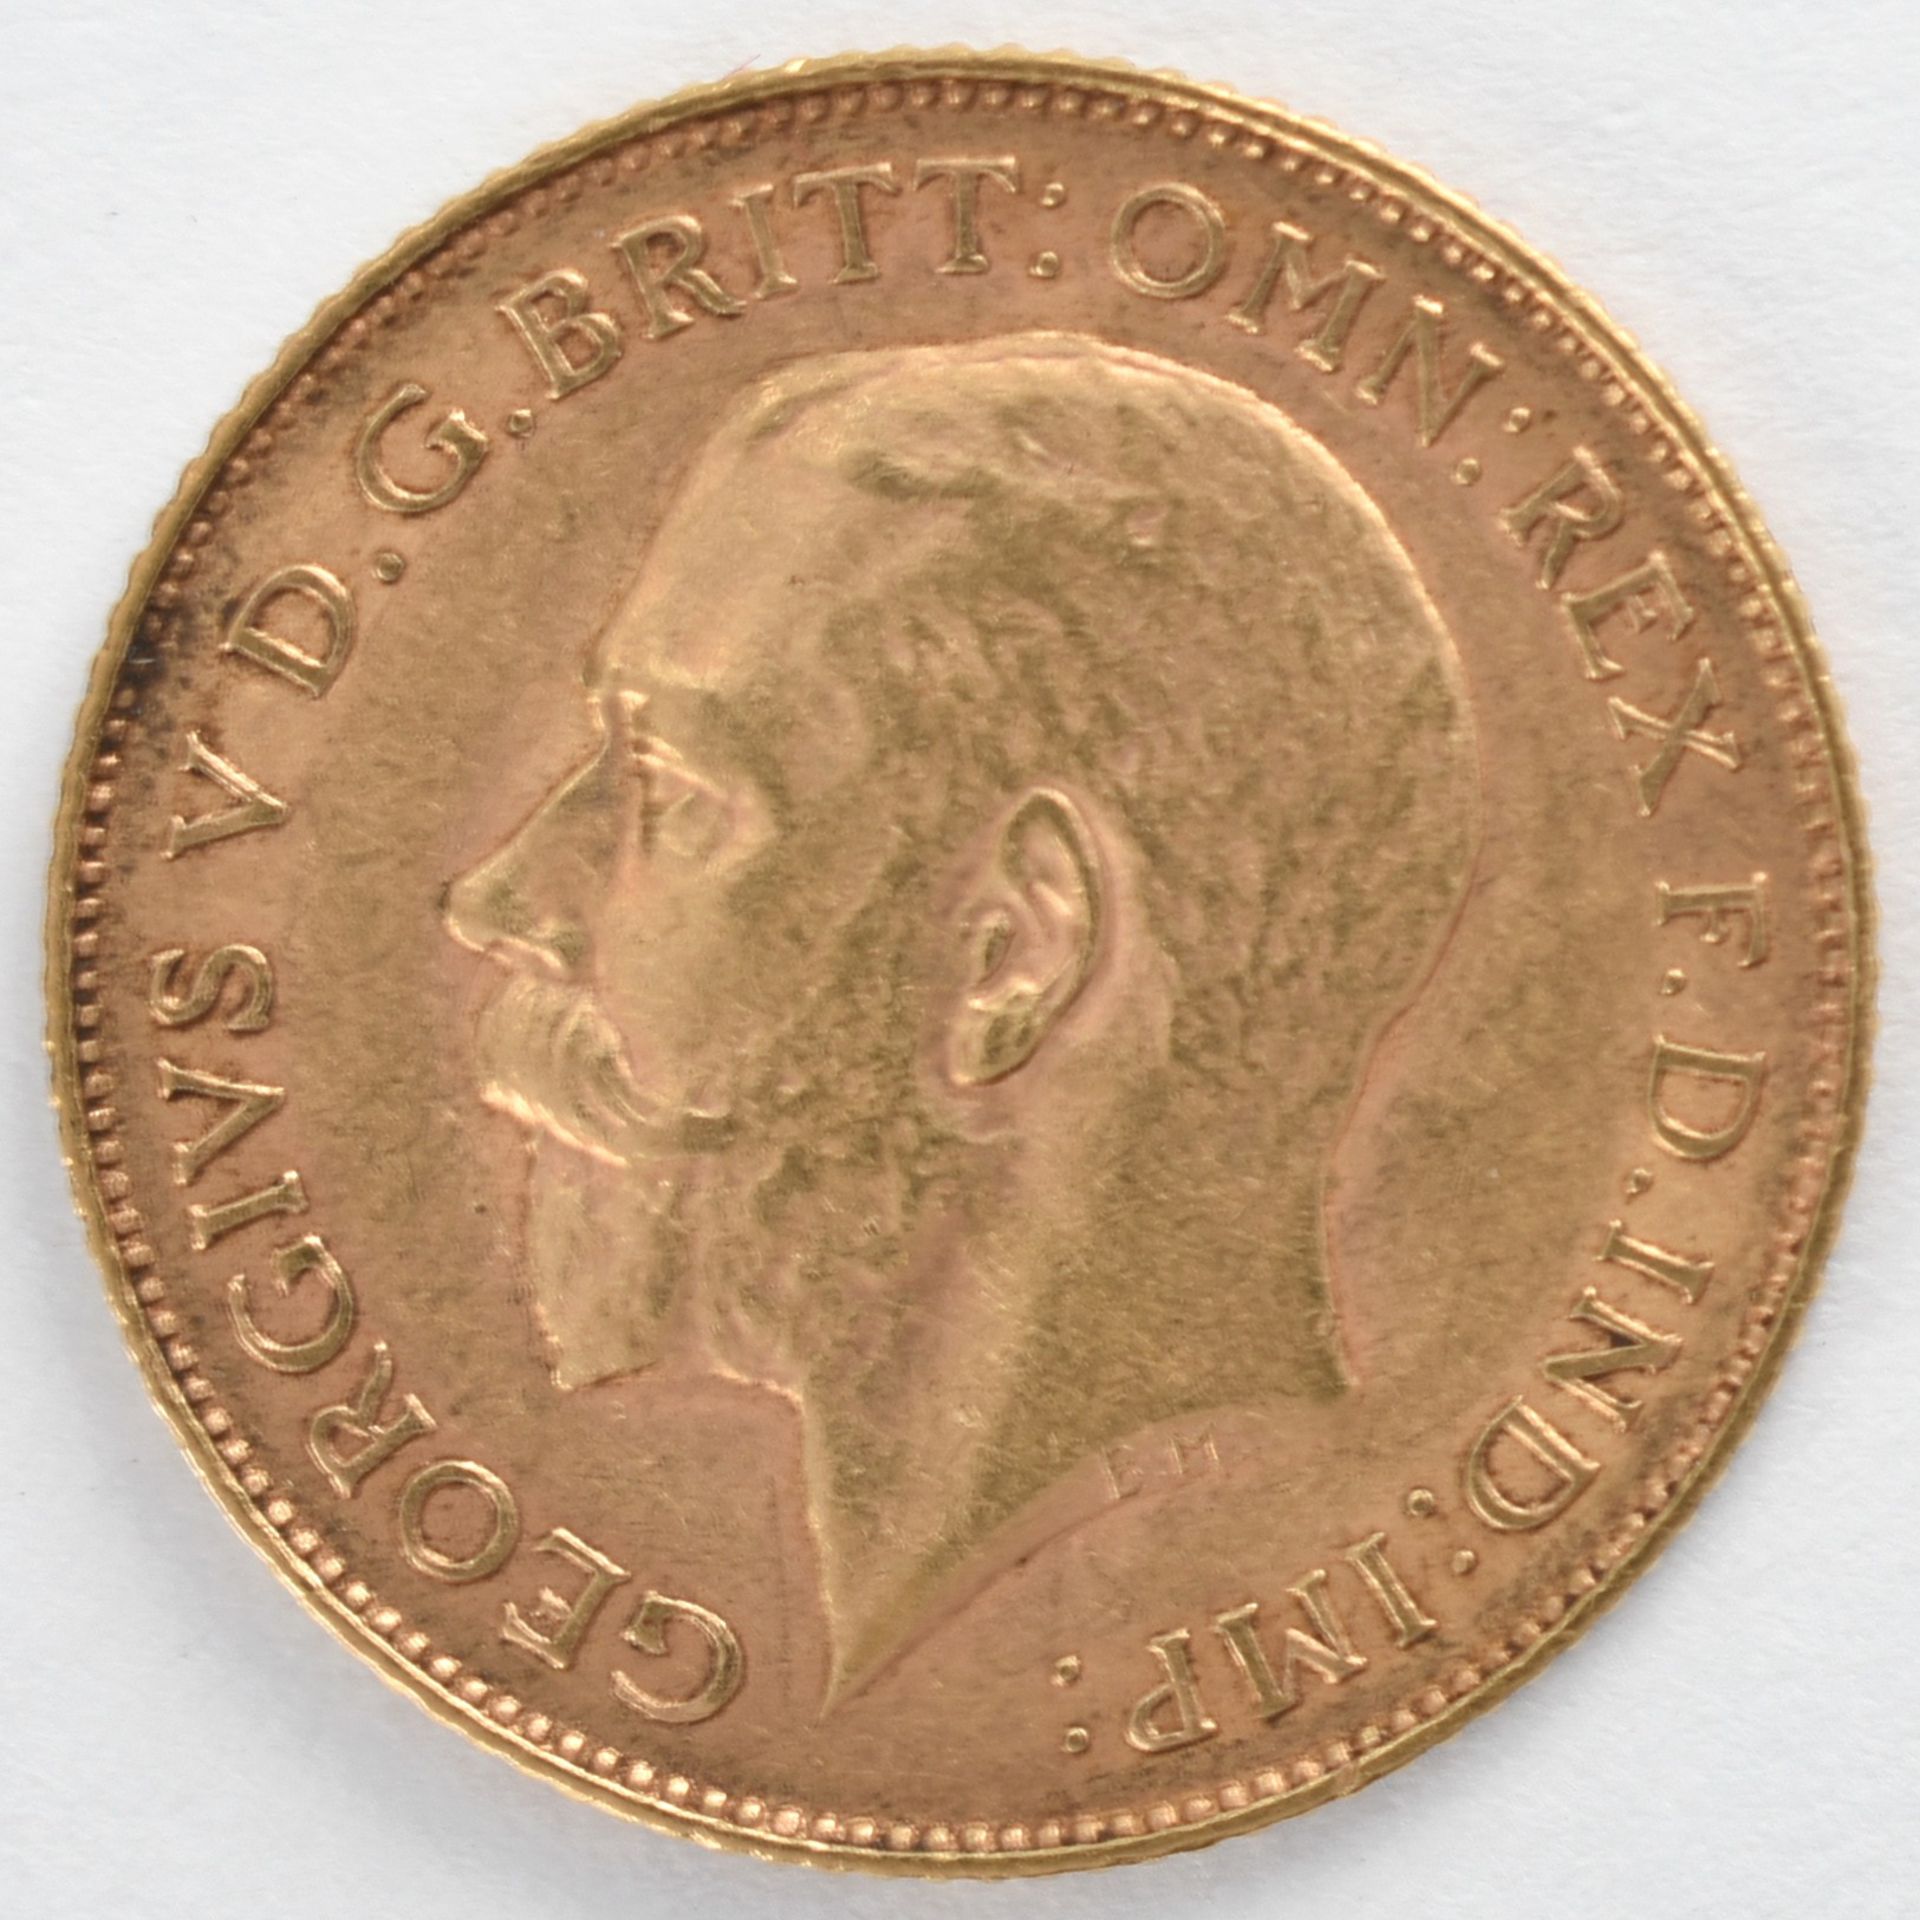 Goldmünze Großbritannien 1925 1/2 Sovereign - 1/2 Pfund in Gold, 3,994 g, 916/1000, D ca. 19,3 mm, - Bild 2 aus 3